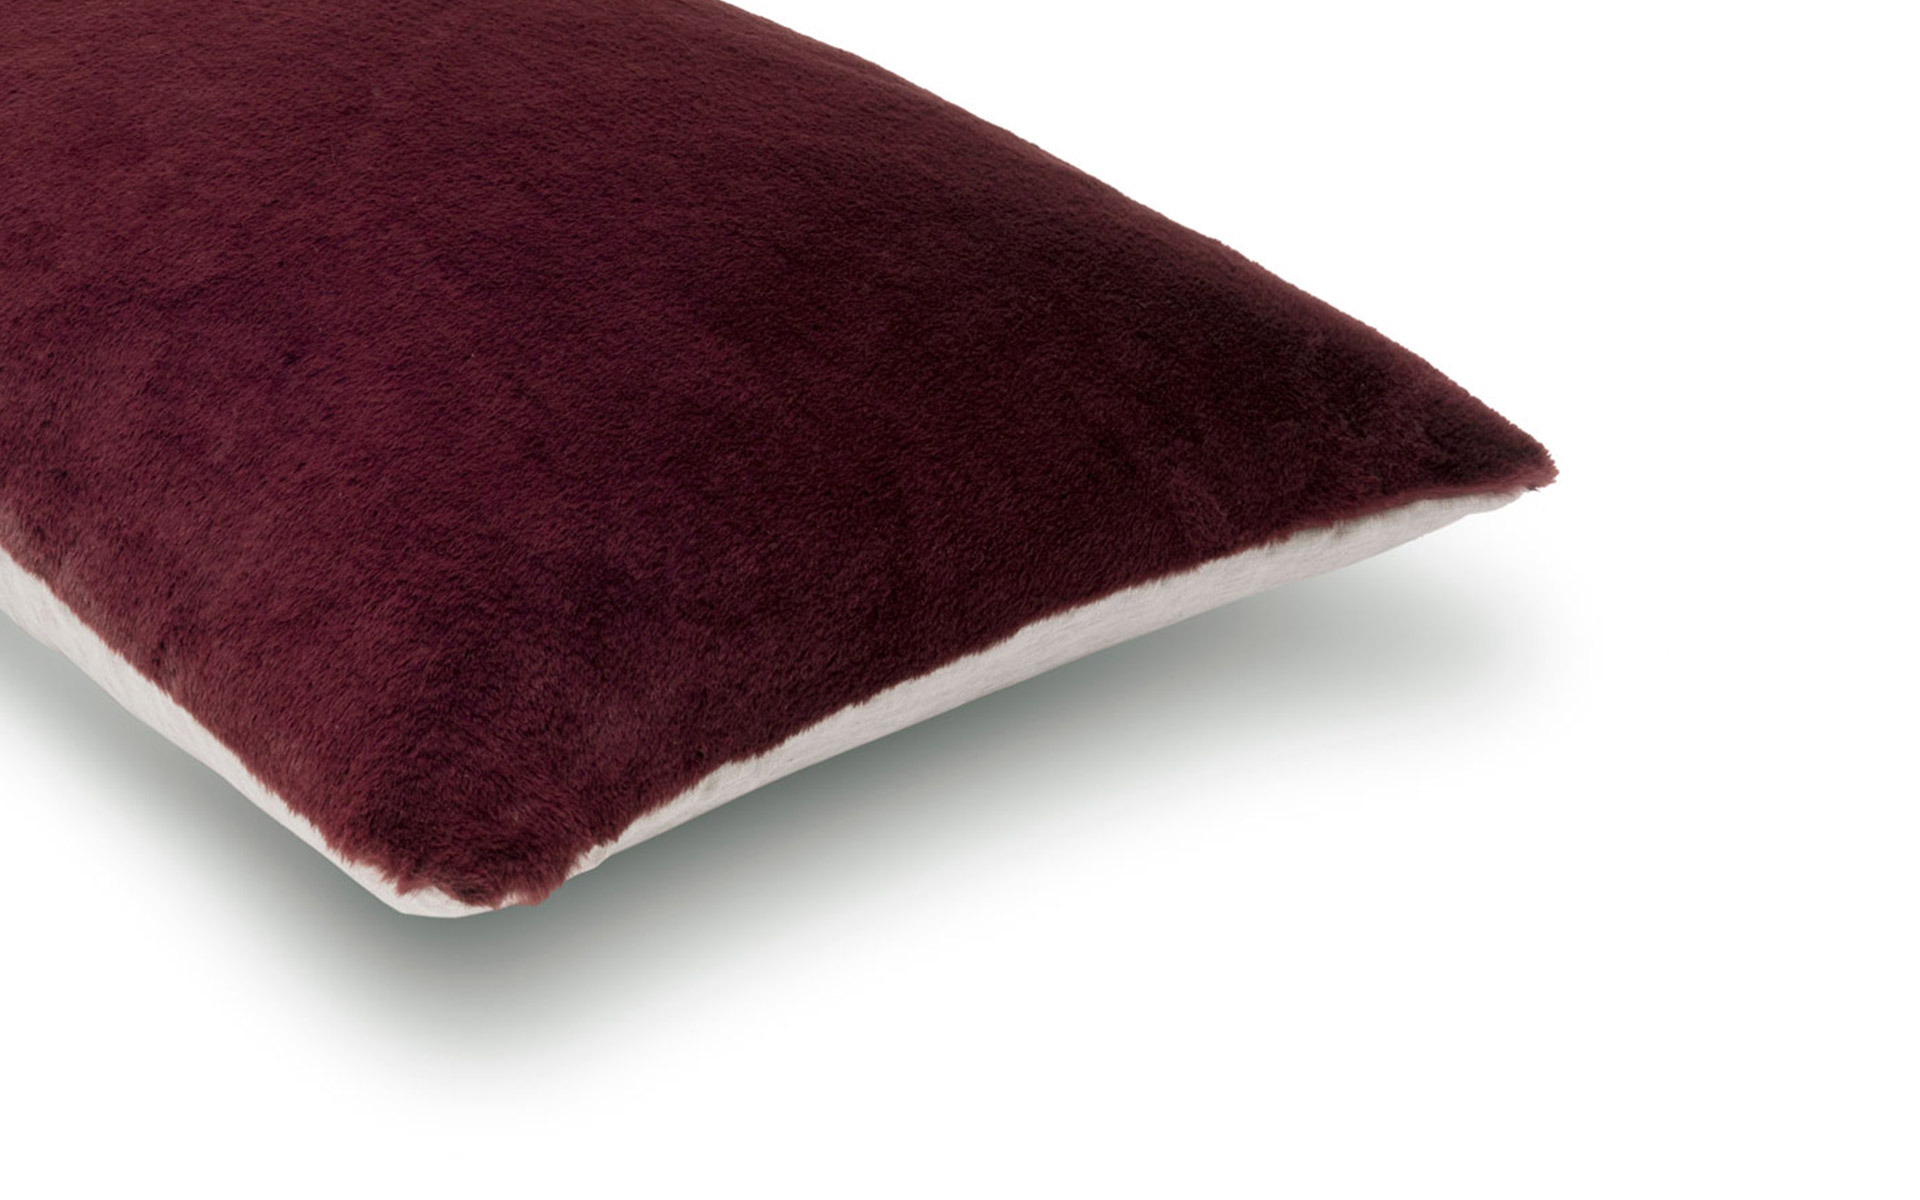 MrsMe cushion Caprice Ruby M detail 1920x1200